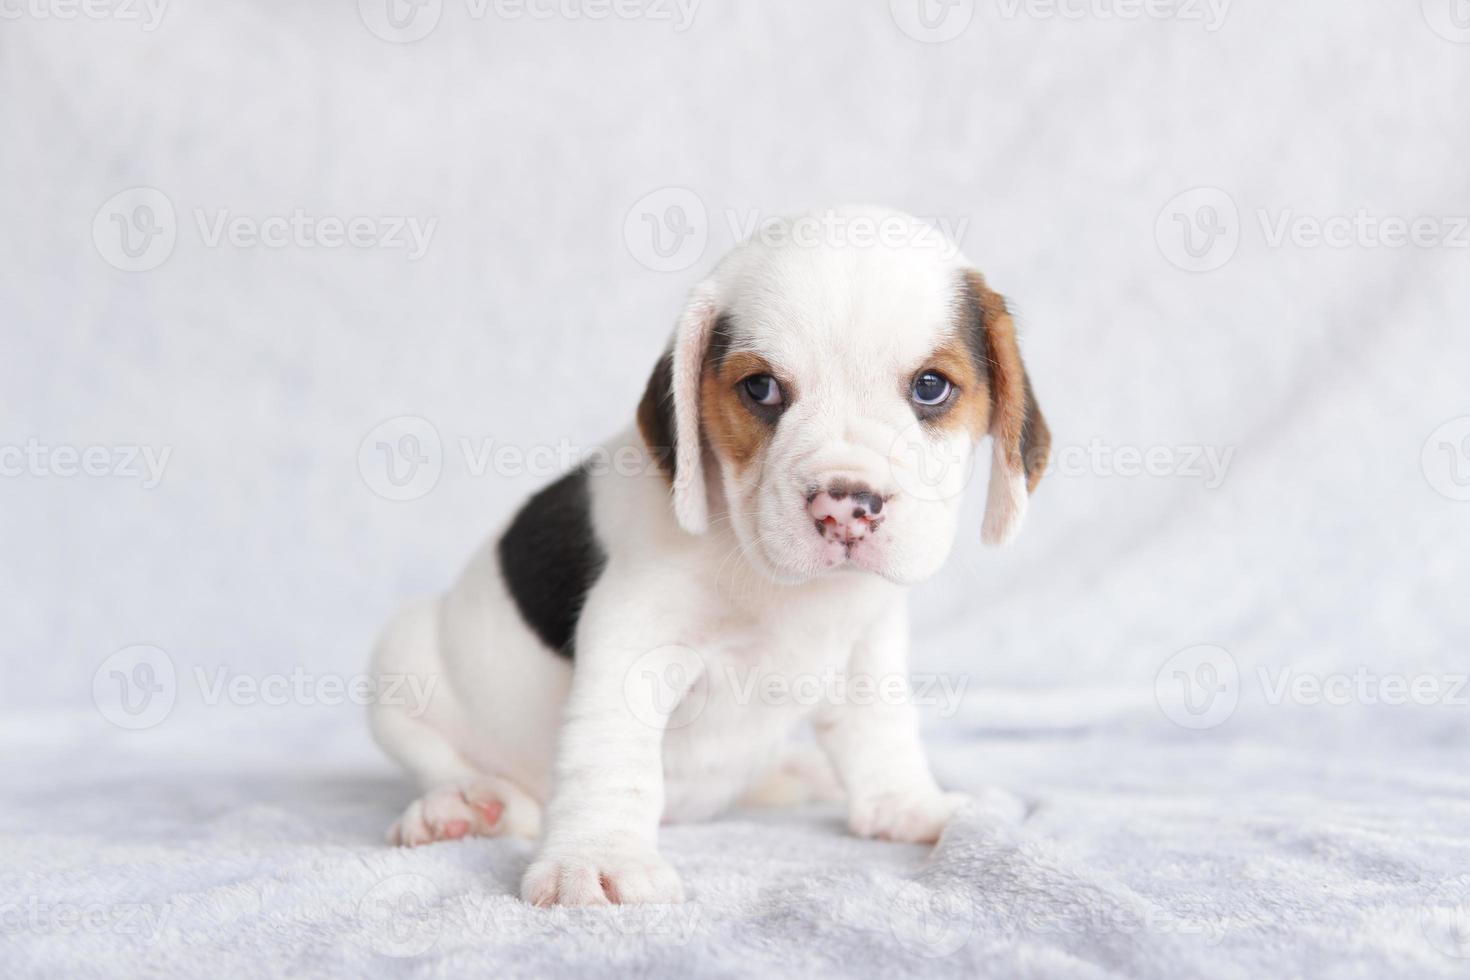 la apariencia general del beagle se asemeja a la de un raposero en miniatura. el beagle se desarrolló principalmente para cazar liebres. Poseyendo un gran sentido del olfato e instintos superiores de rastreo. foto